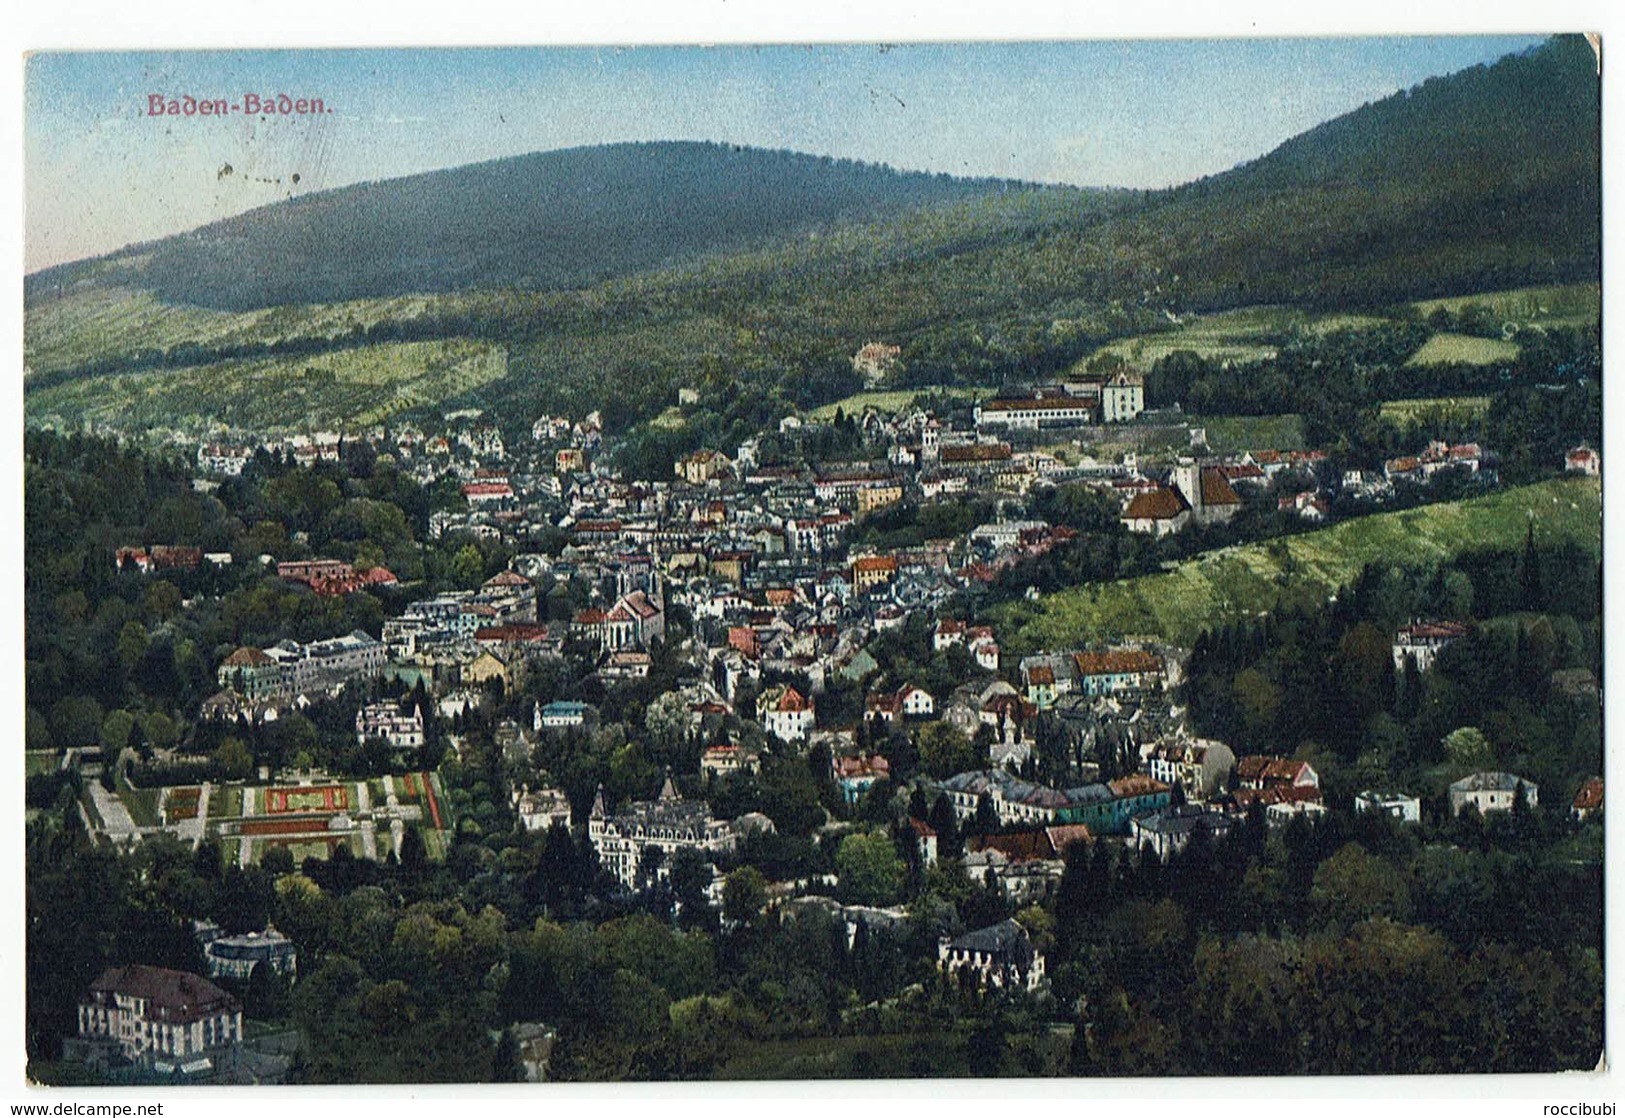 Baden-Baden 1919 - Baden-Baden